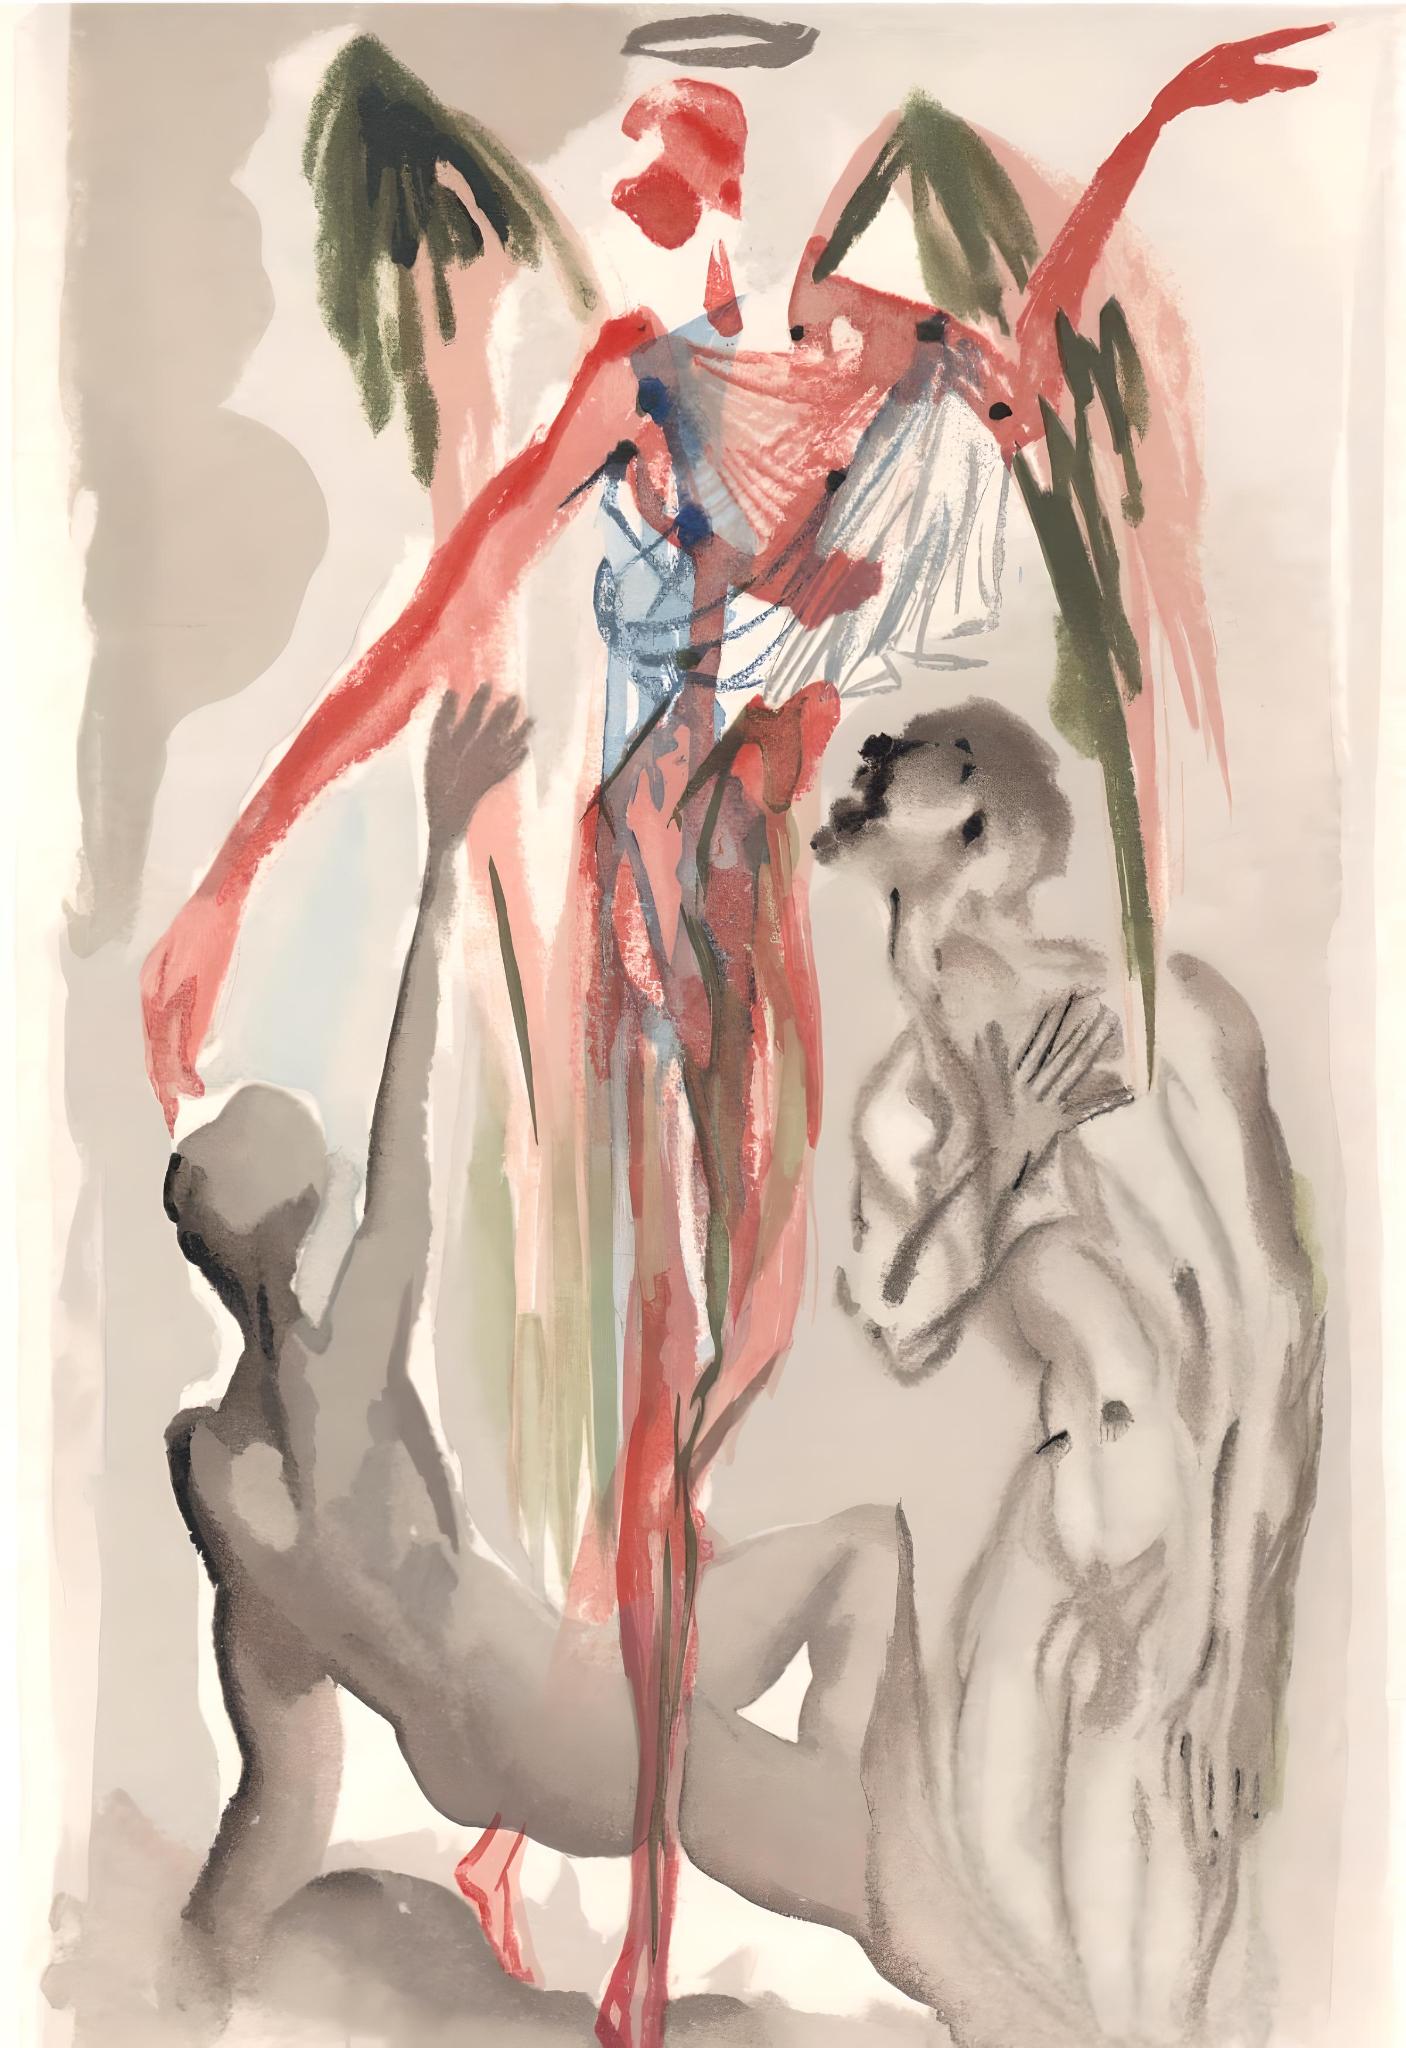 Künstler: Salvador Dali (1904-1989)
Jahr: 1963
Medium: Holzstich in Farben auf Rives BFK Papier
Beschriftung: Unsigniert und nicht nummeriert, wie ausgegeben
Auflage: 4765 auf Französisch; 3188 auf Italienisch, plus Probedrucke
Katalog Raisonne